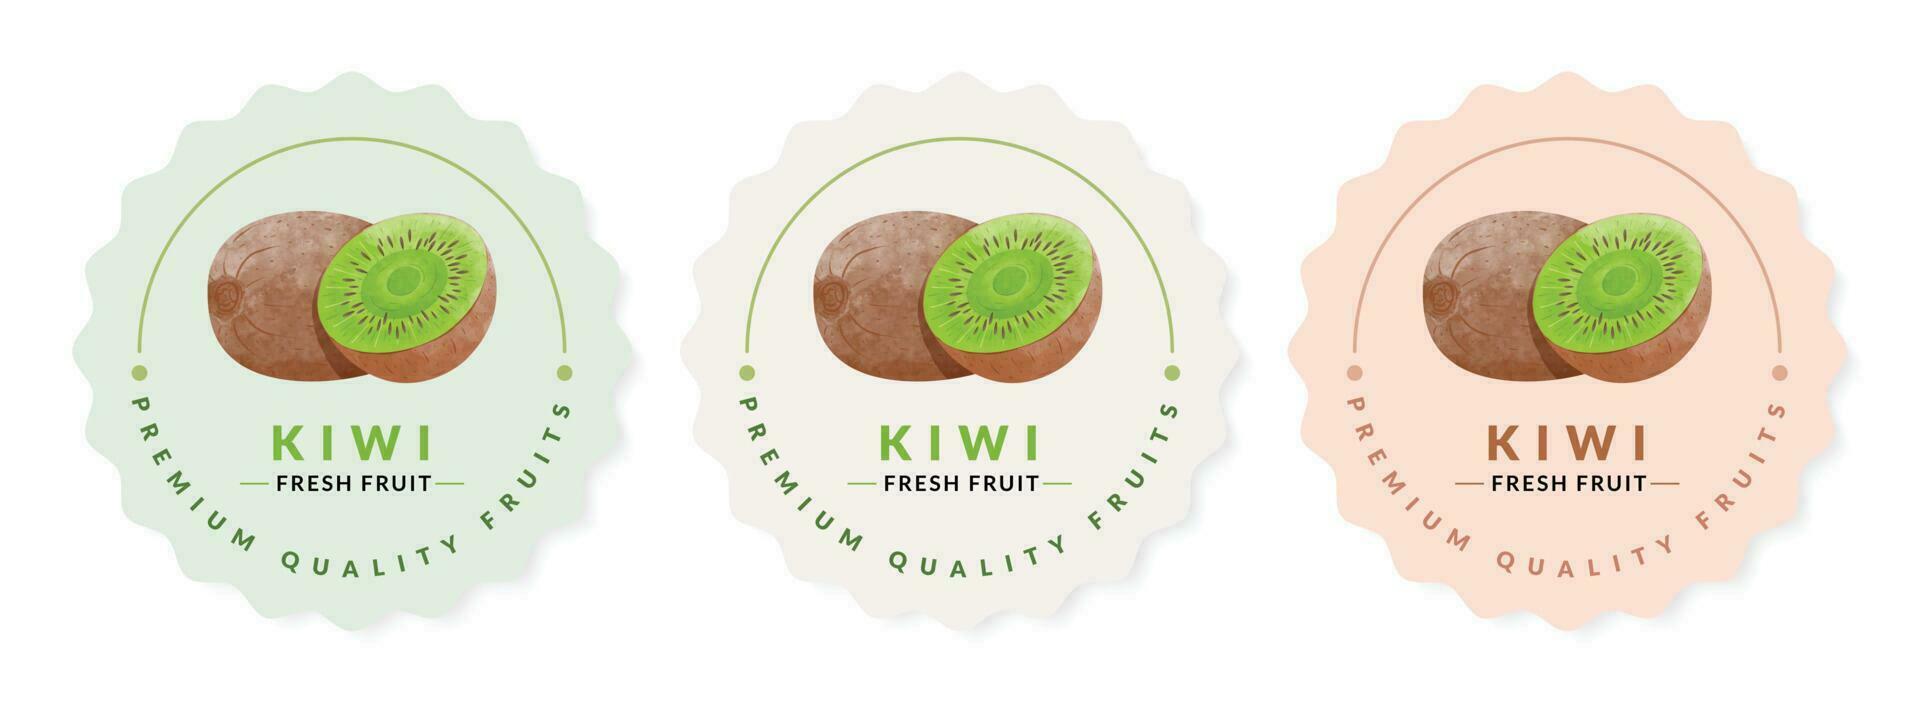 kiwi fruit emballage conception modèles, aquarelle style vecteur illustration.